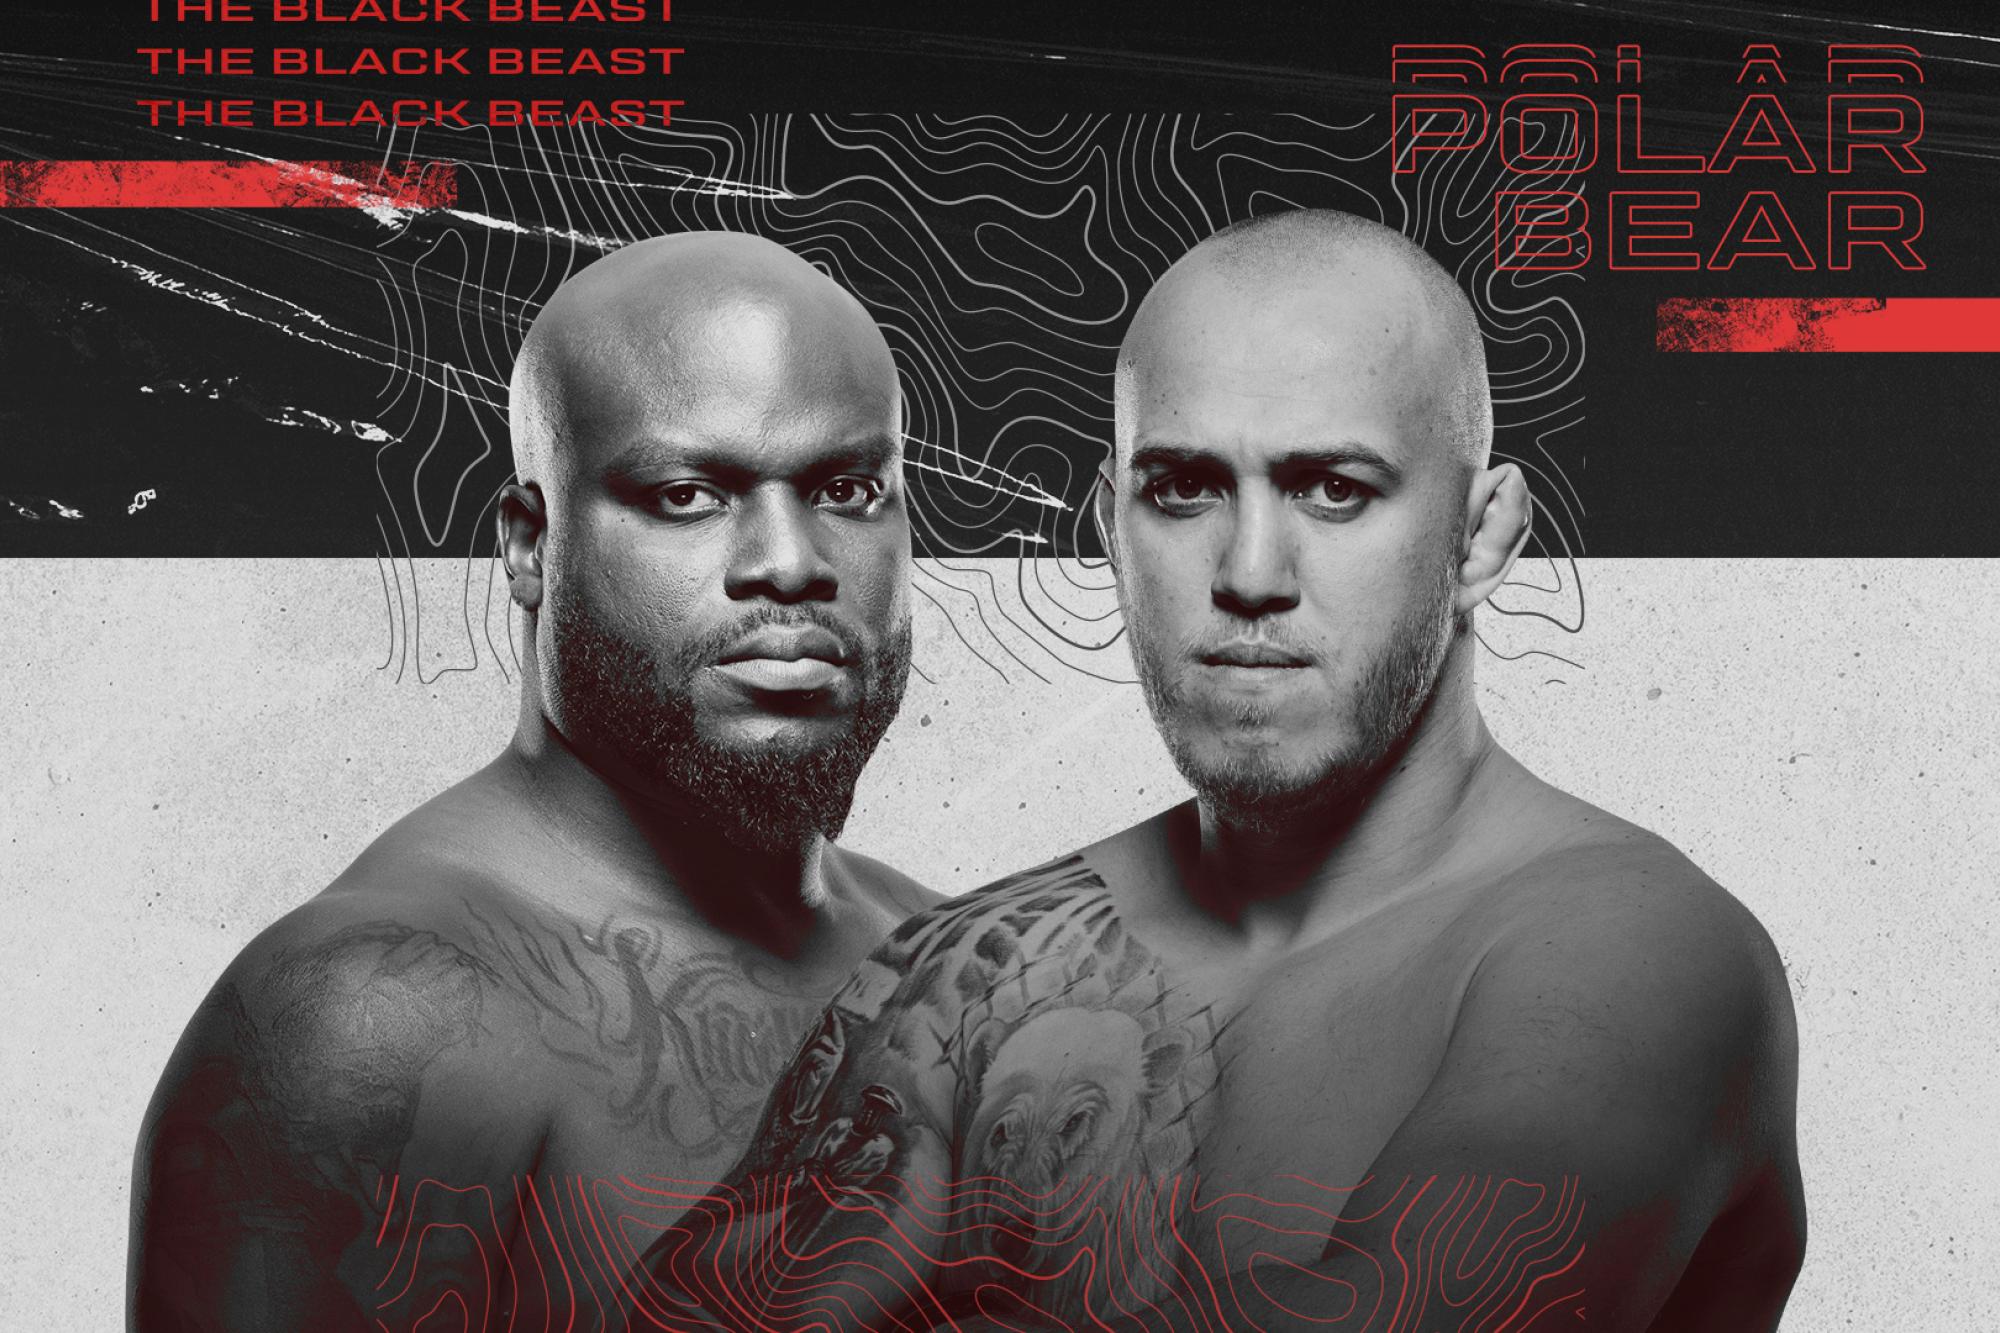 UFC on ESPN+ 76 - Las Vegas - Poster et affiche